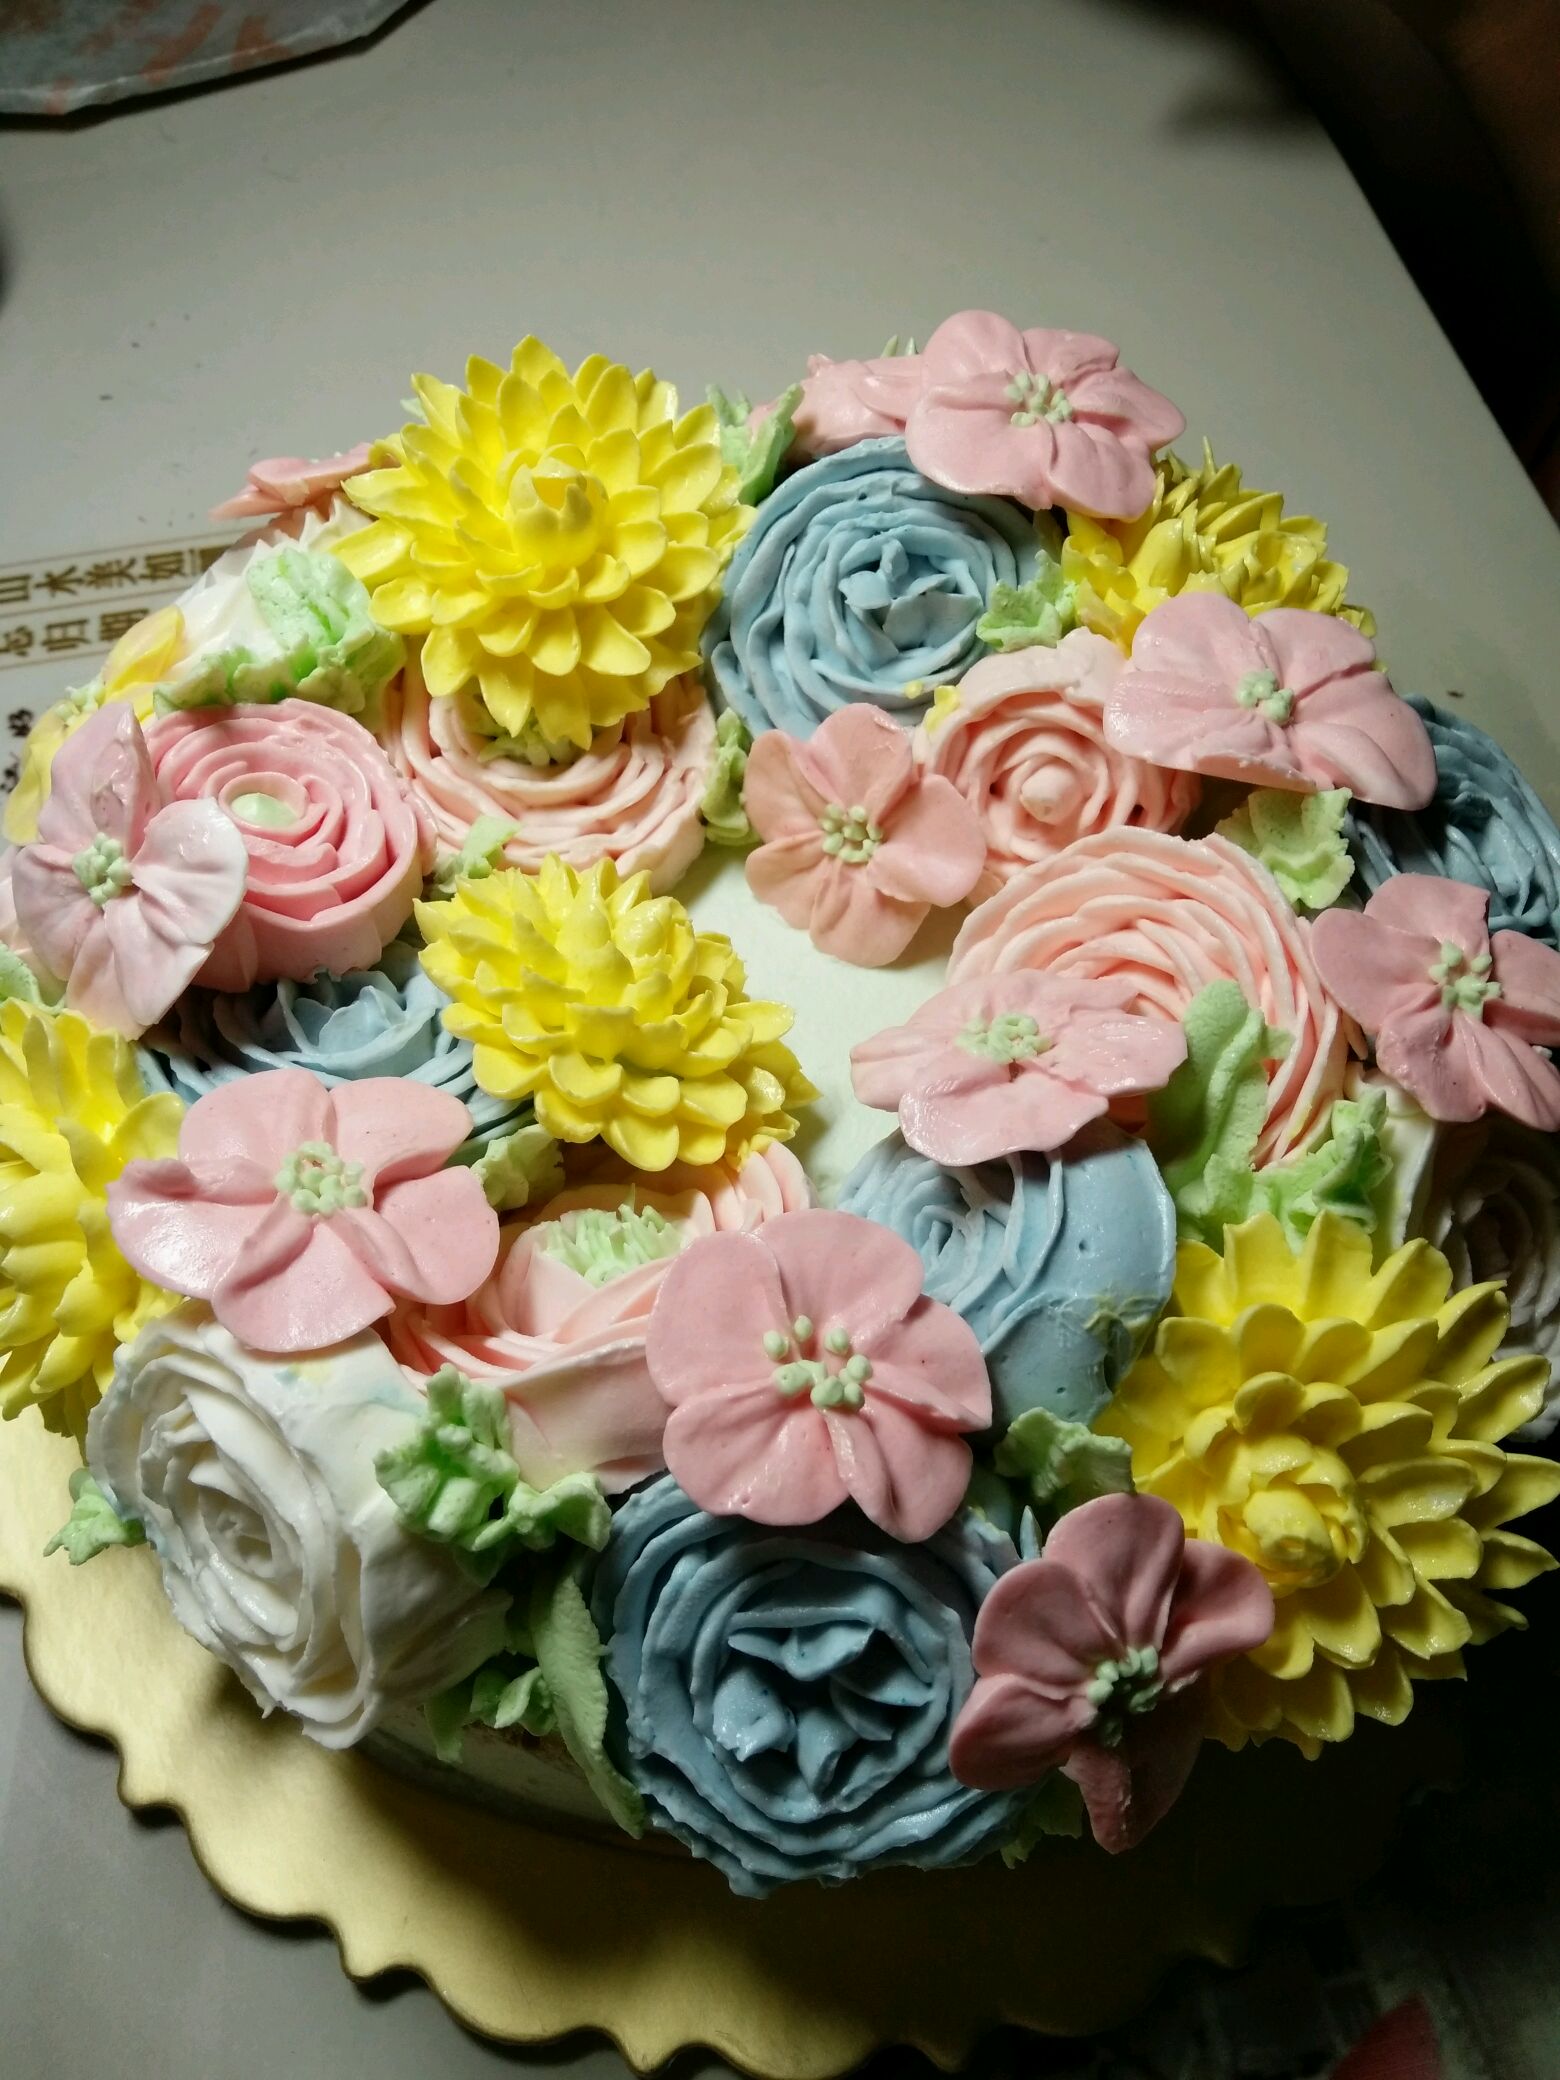 裱花蛋糕怎么做_裱花蛋糕的做法_豆果美食